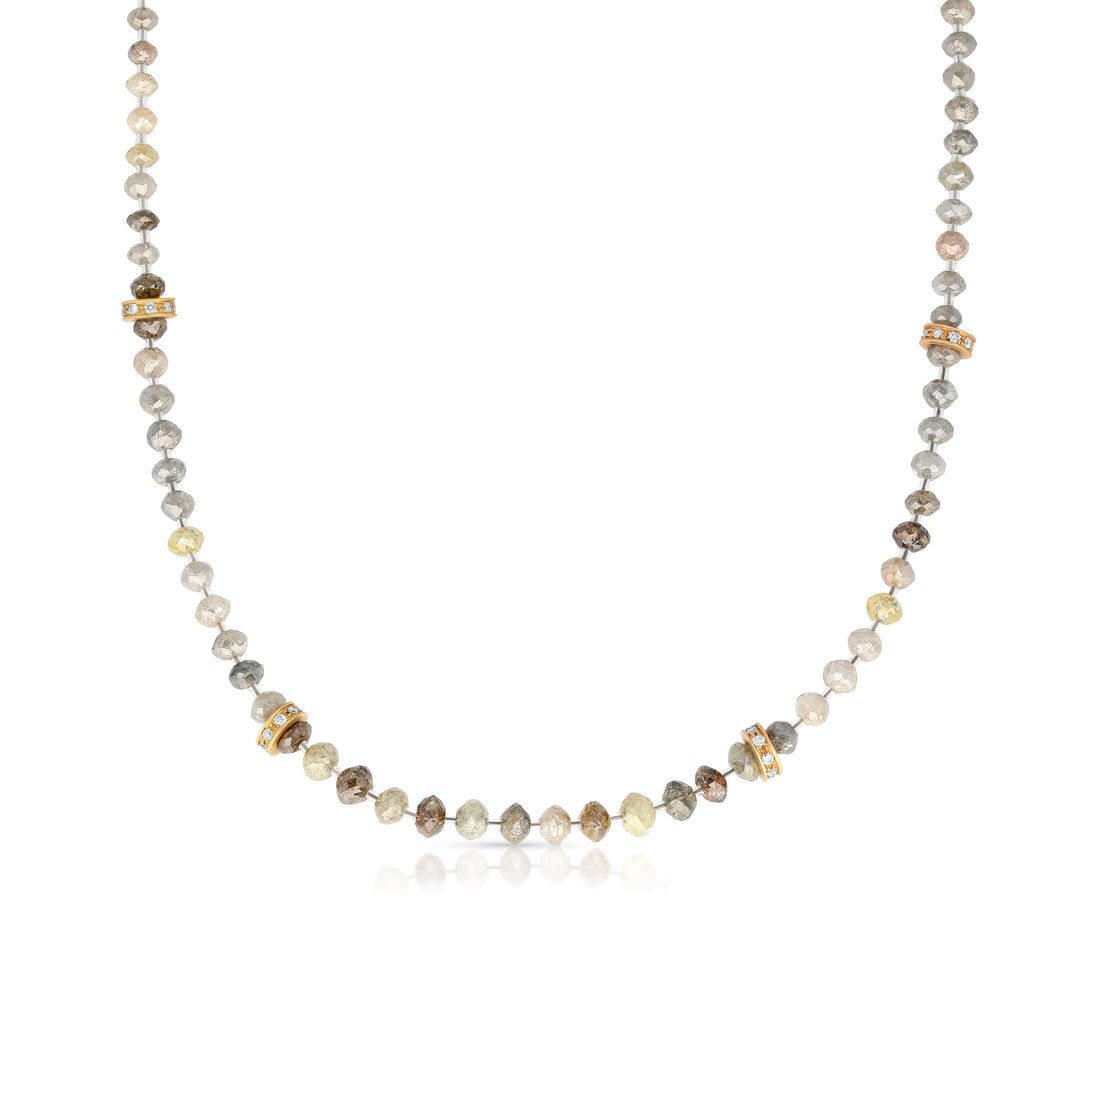 Multicolor Mix Diamond Beaded Necklace - 48.64 Carat